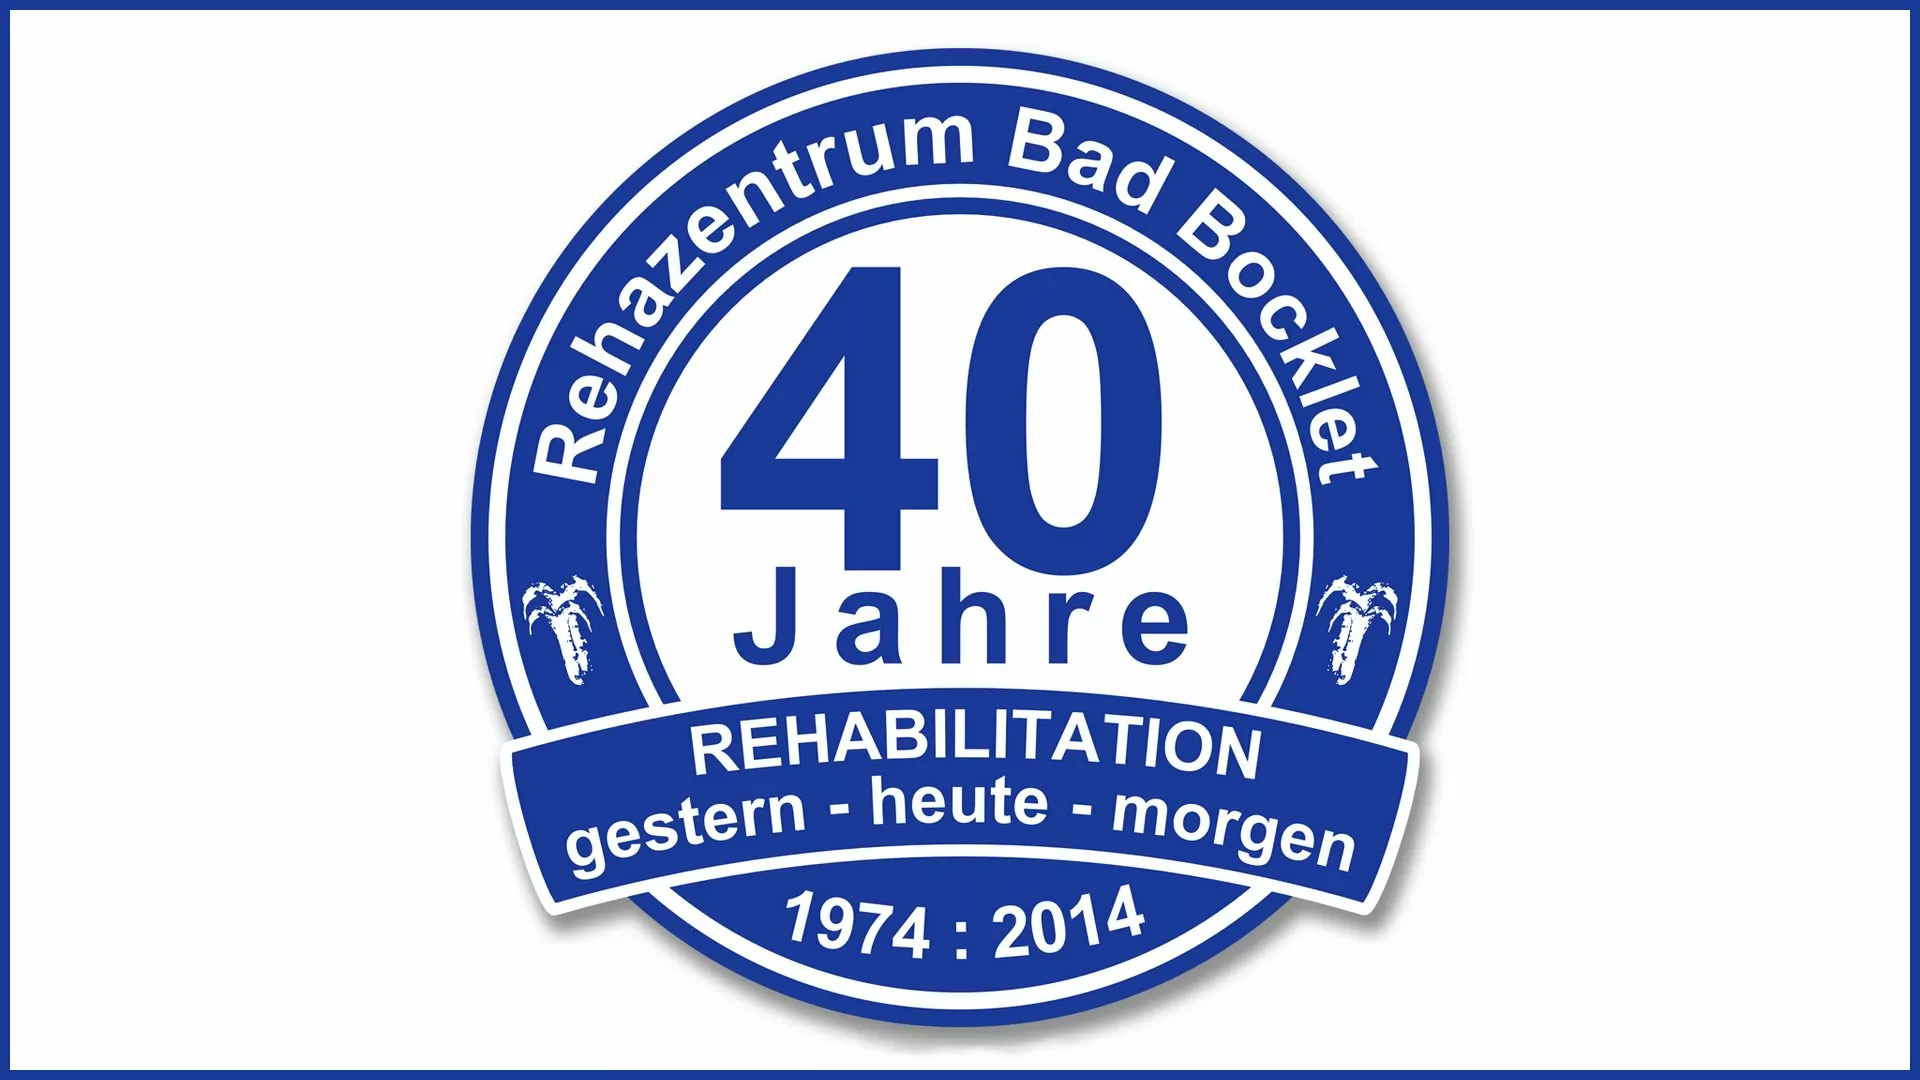 Die Rehaklinik Bad Bocklet ist seit über 40 Jahren im Rehageschäft tätig.